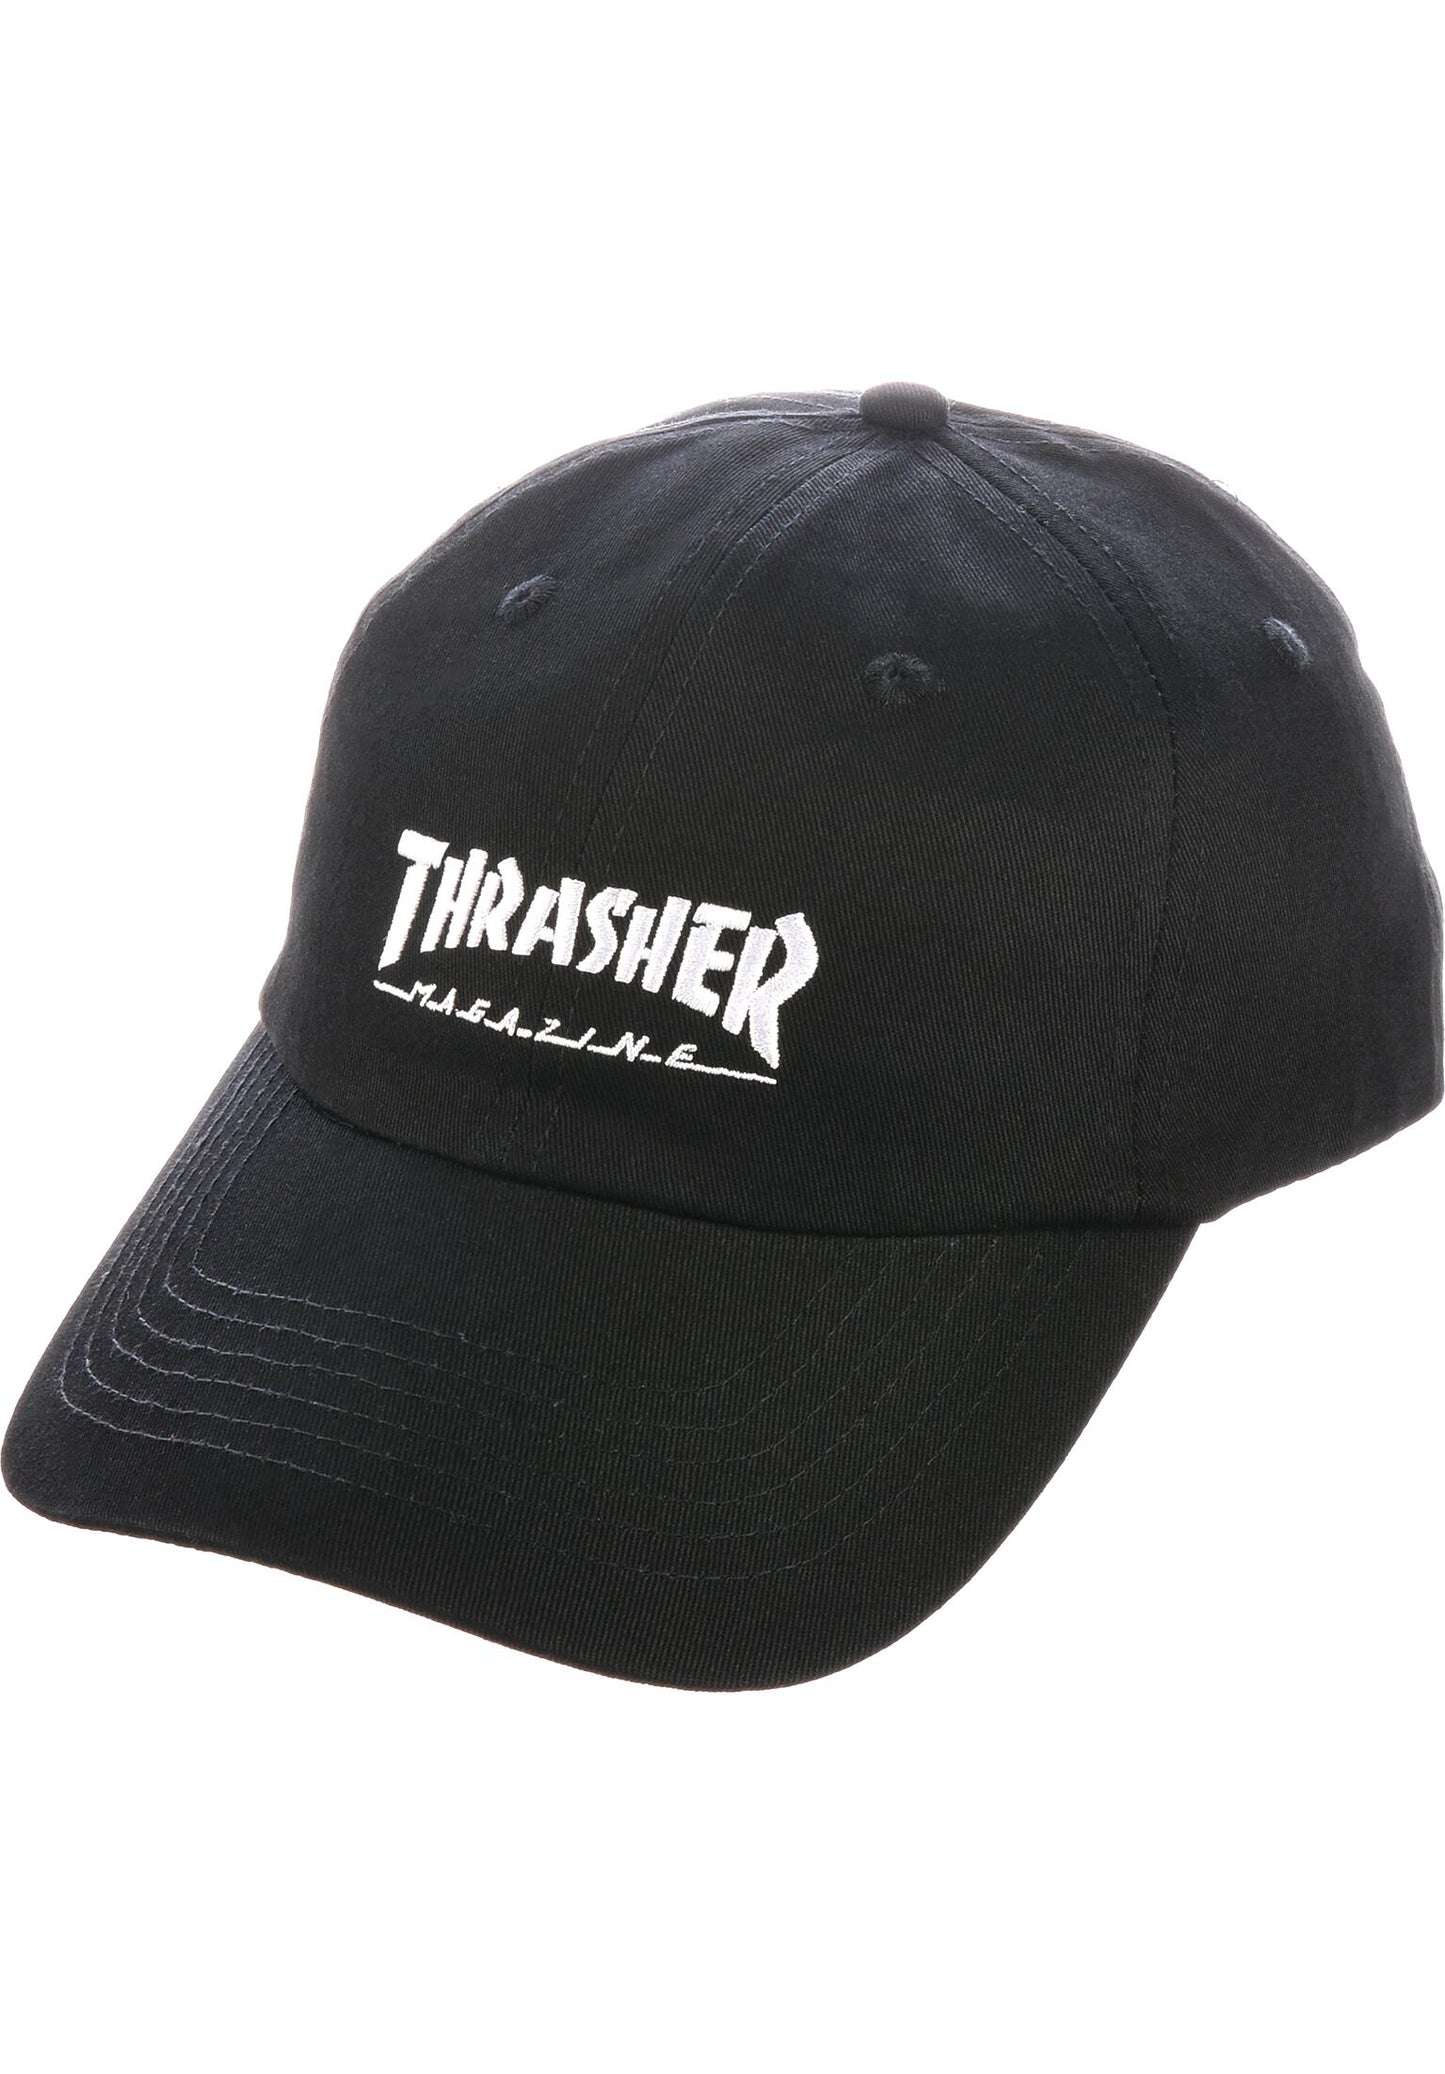 THRASHER - OLD TIMER HAT - BLACK